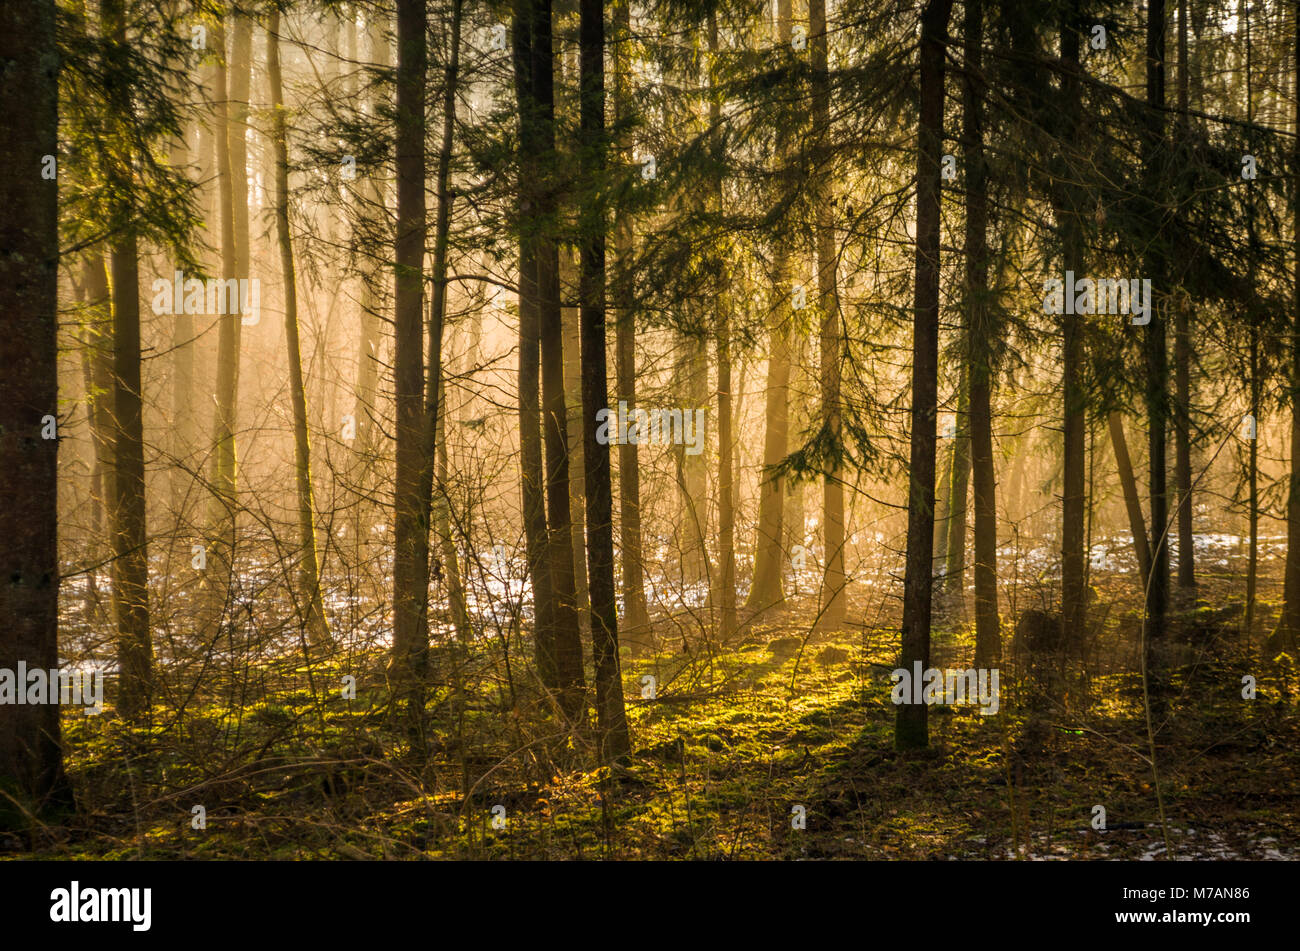 Los rayos de luz del amanecer de invierno en la niebla de luz entre los árboles del bosque Solnicki- ciudad bosque de la ciudad de Bialystok, Polonia. Foto de stock